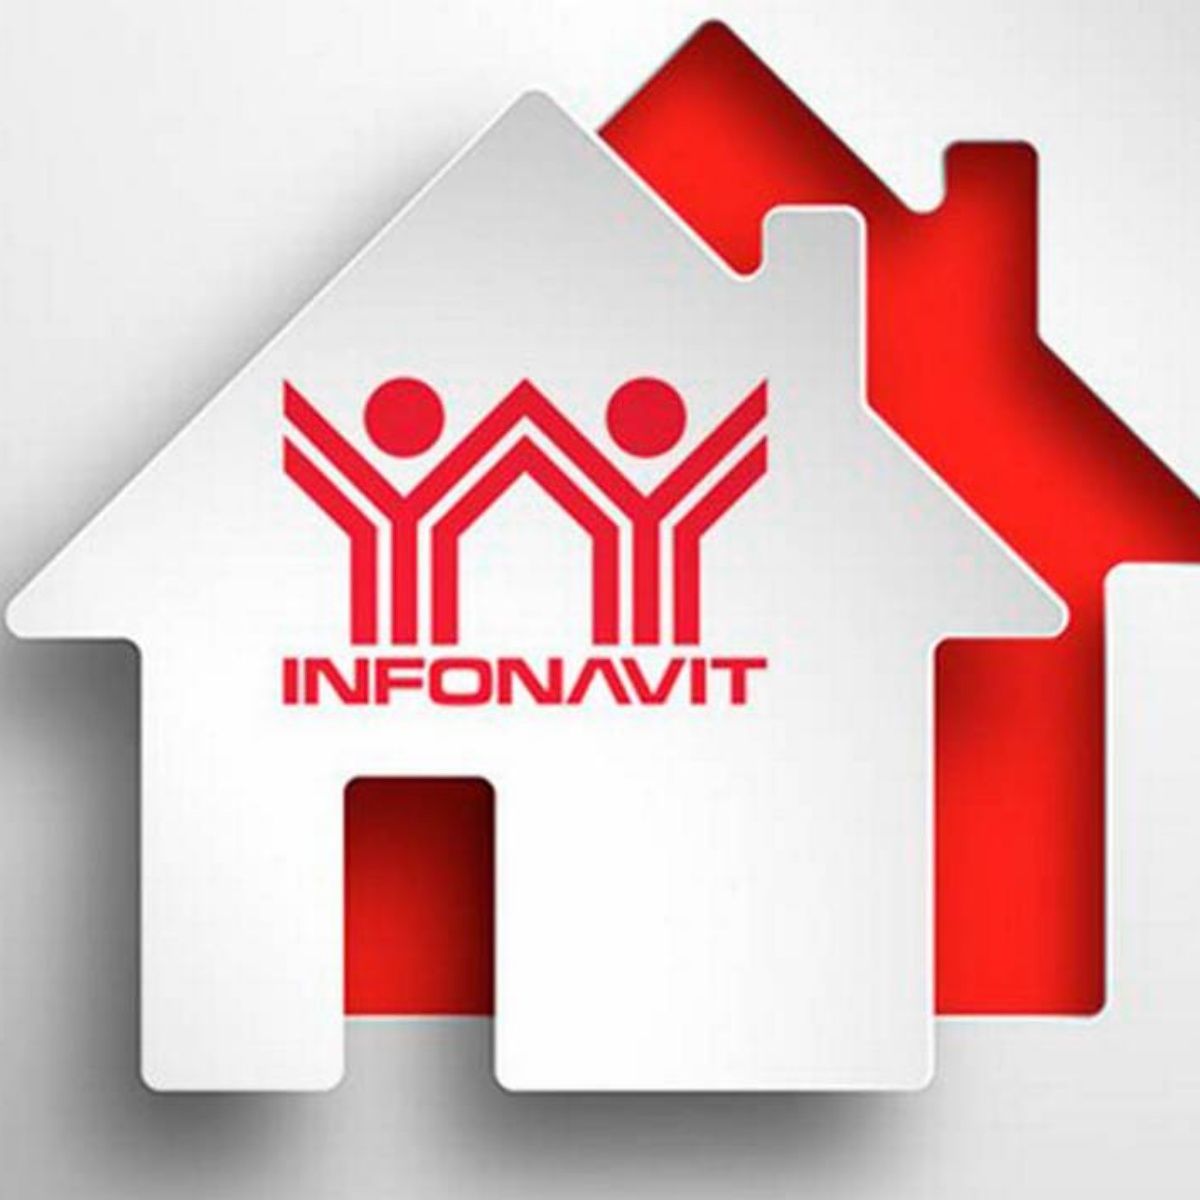 El INFONAVIT apoyará a trabajadores afectados por Covid-19